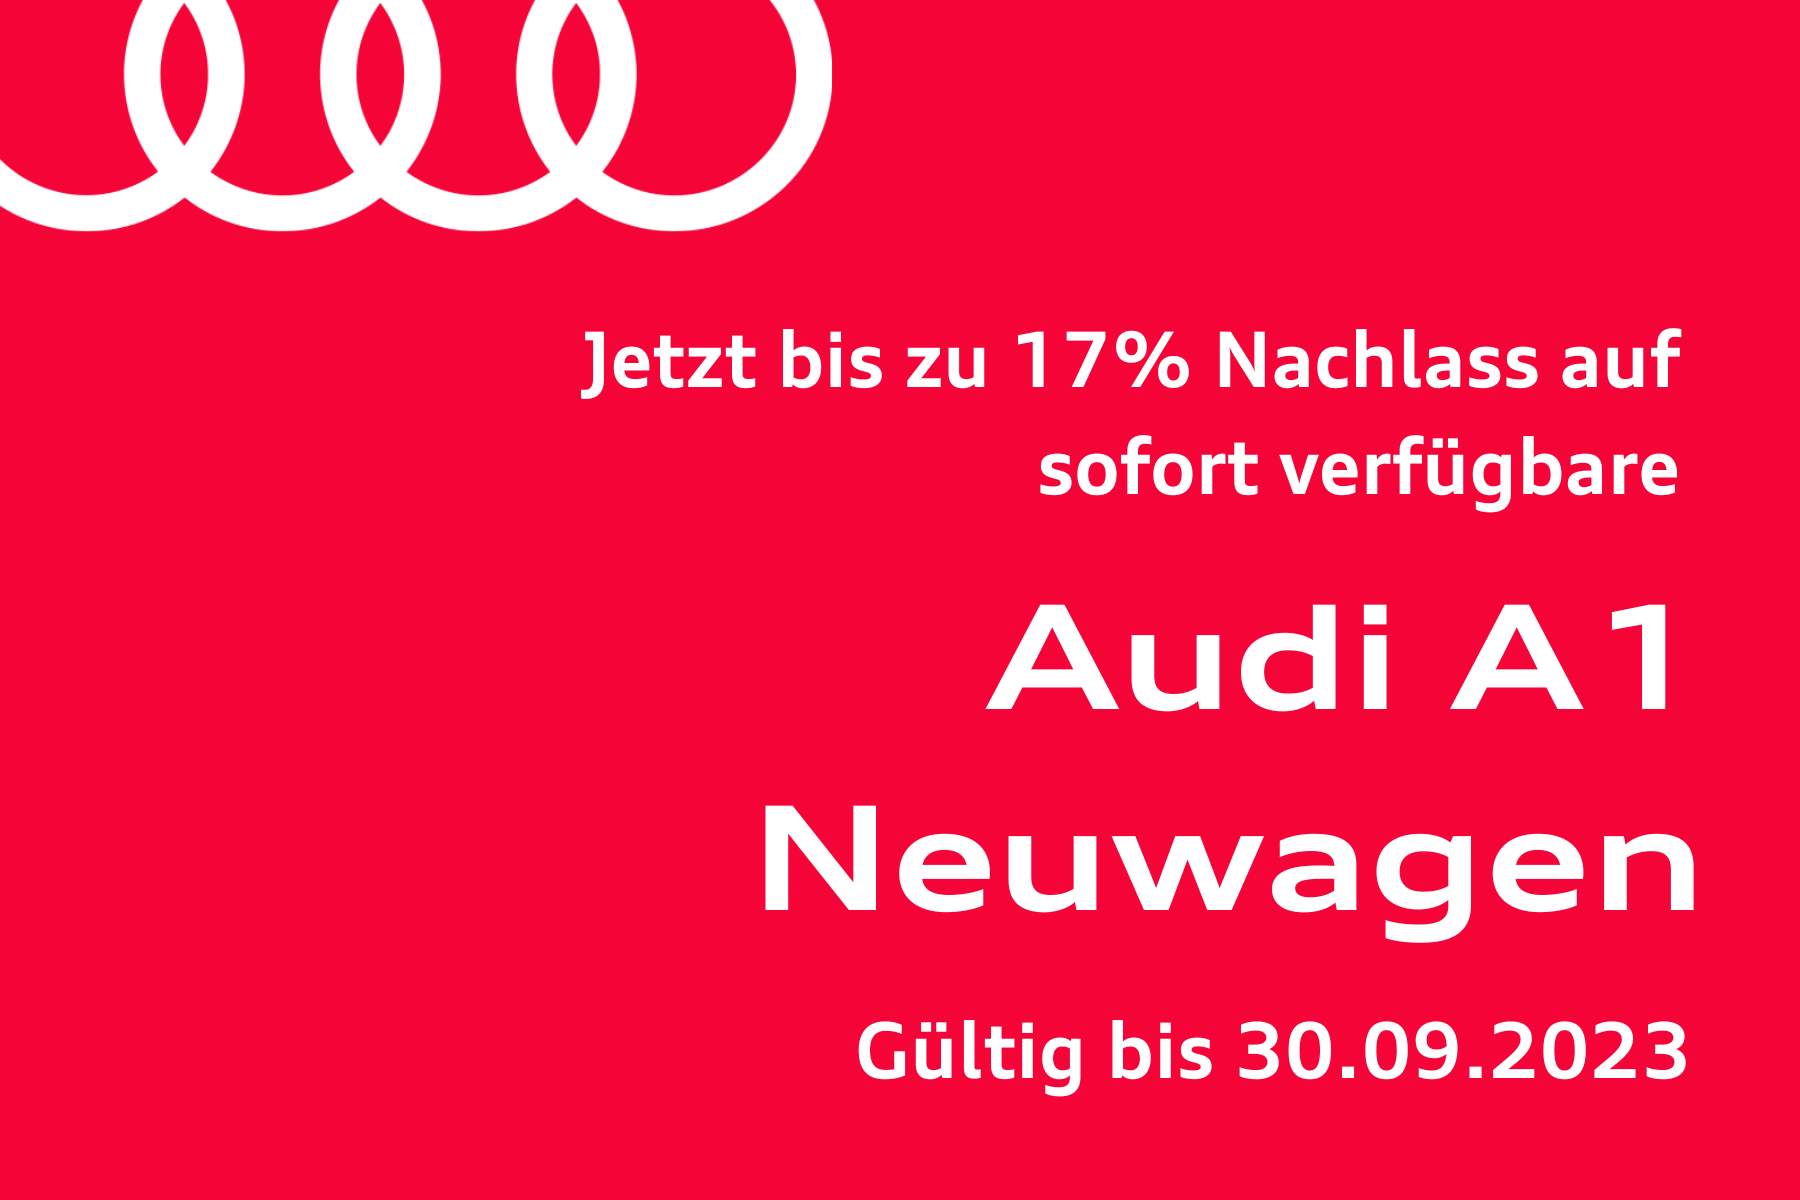 sofort verfügbare Audi A1 Neuwagen